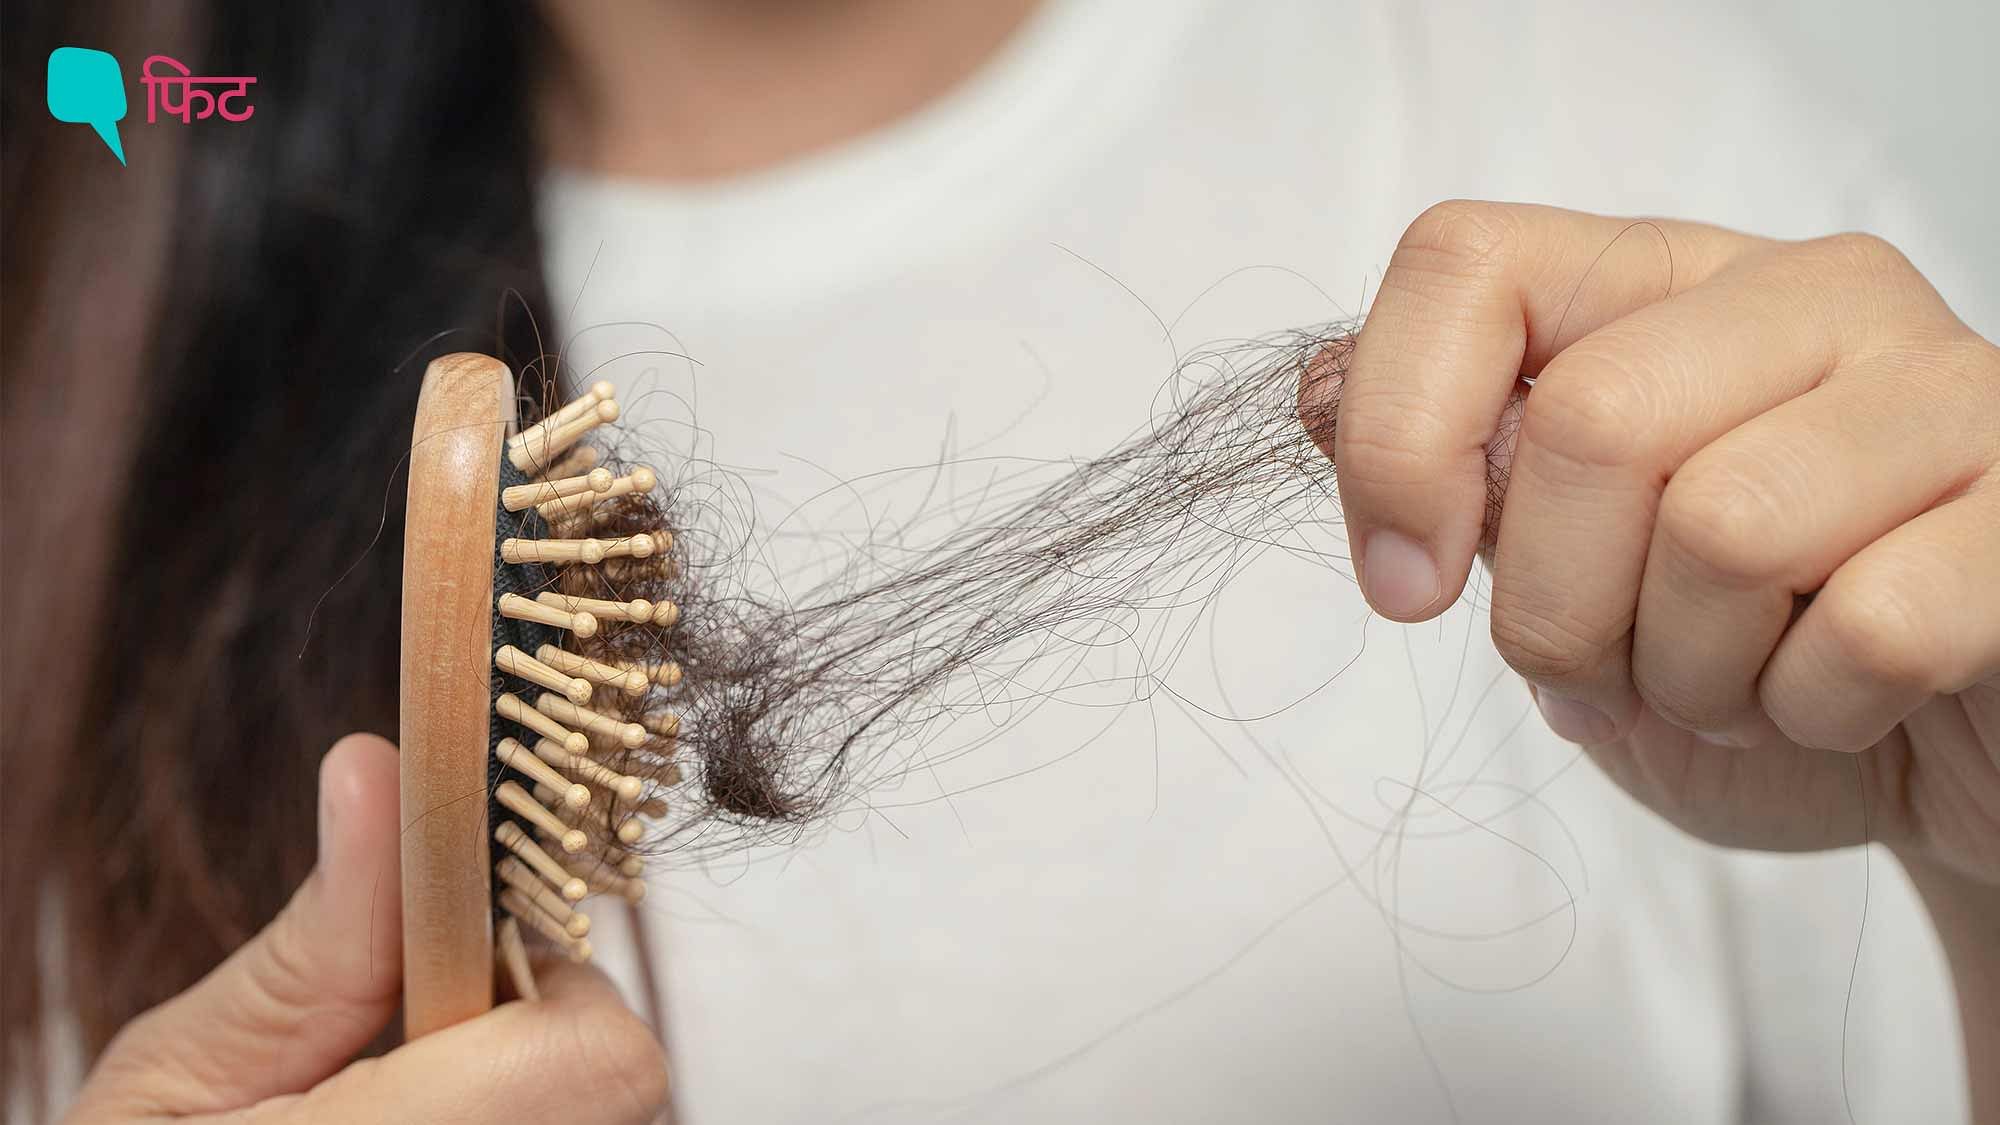 <div class="paragraphs"><p>Winter Hair Care Tips: सर्दियों में टूटते बालों का इलाज और बचाव बताते एक्सपर्ट्स</p></div>